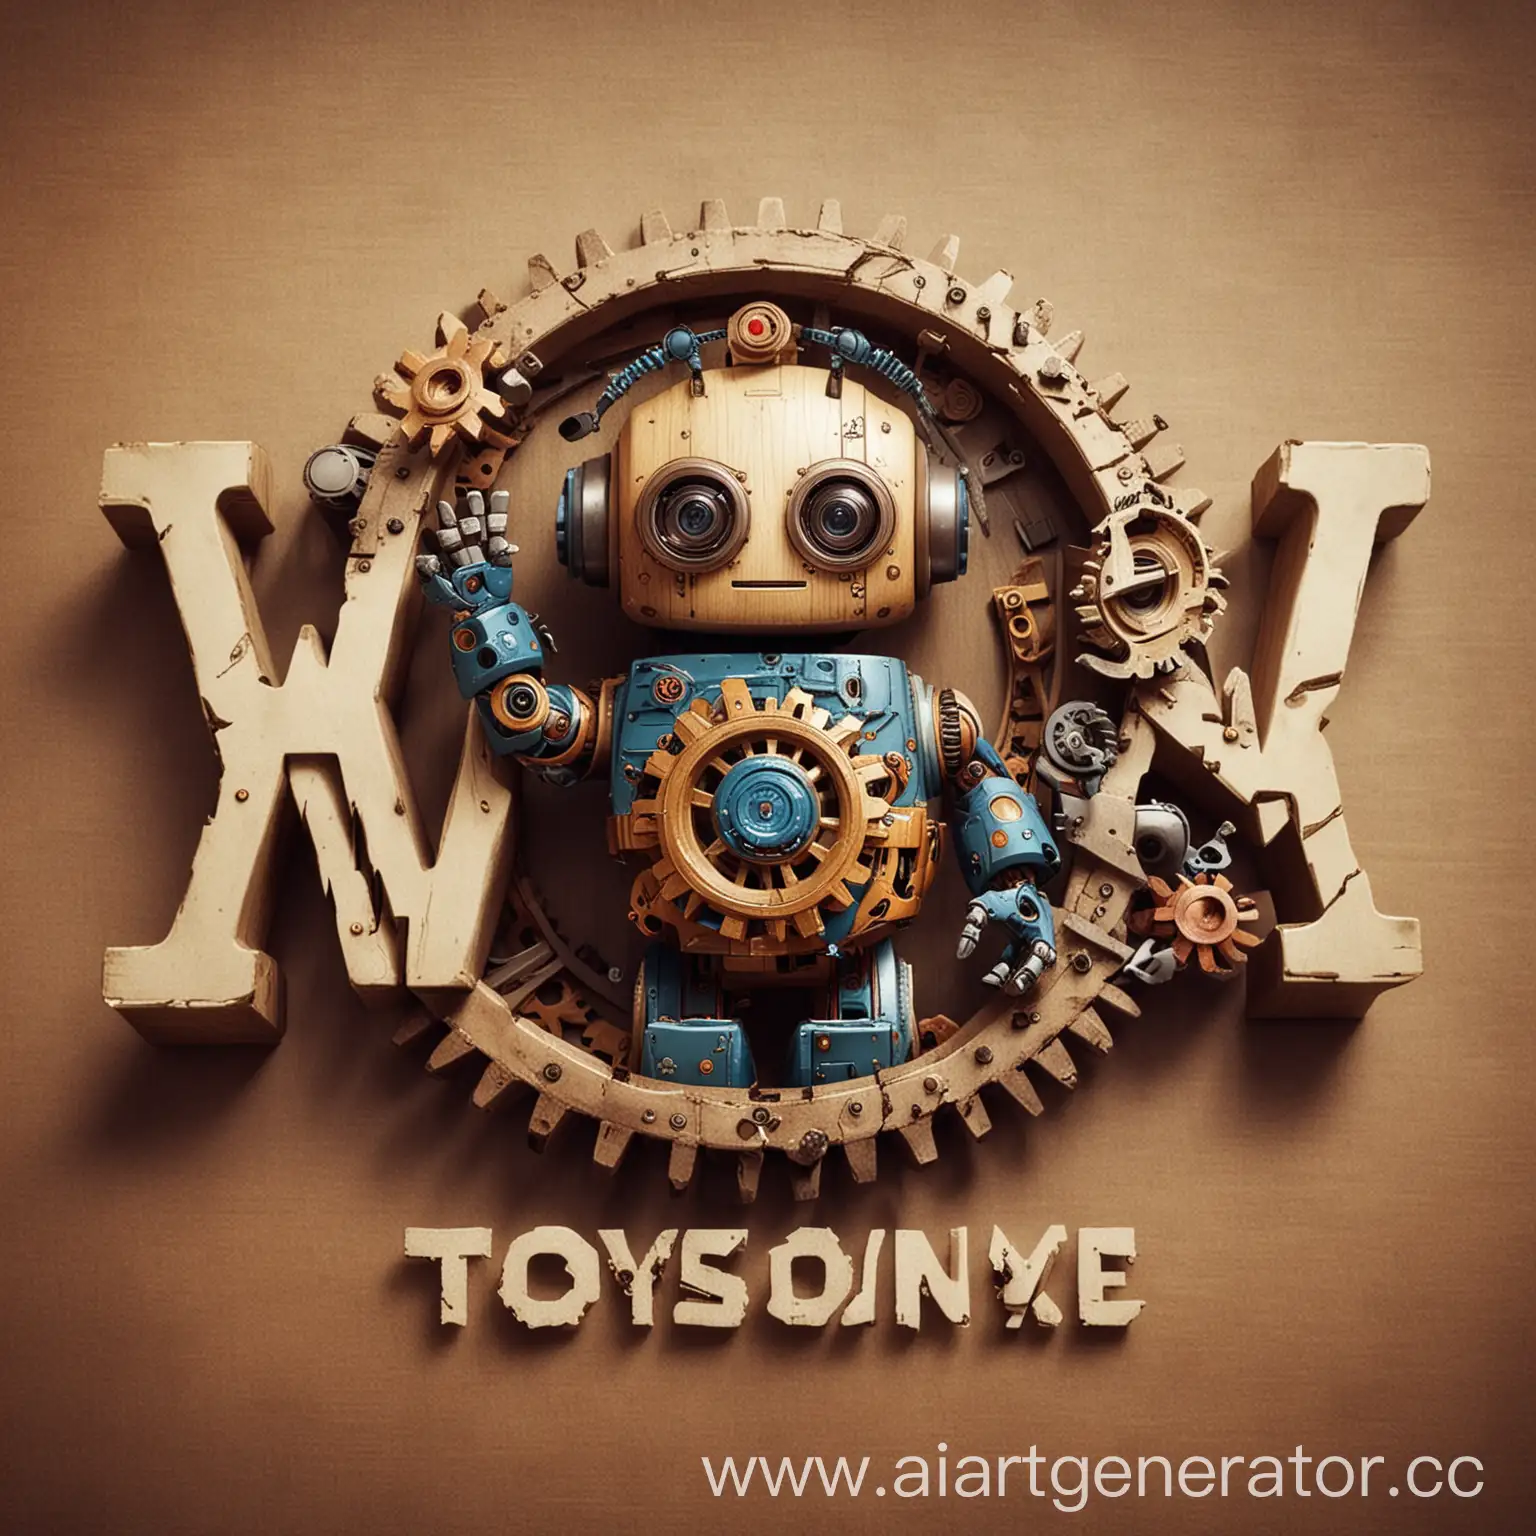 Логотип с шестерёнками и буквой W, небольшого мини робота, и надпись "Игрушки по всему свету"